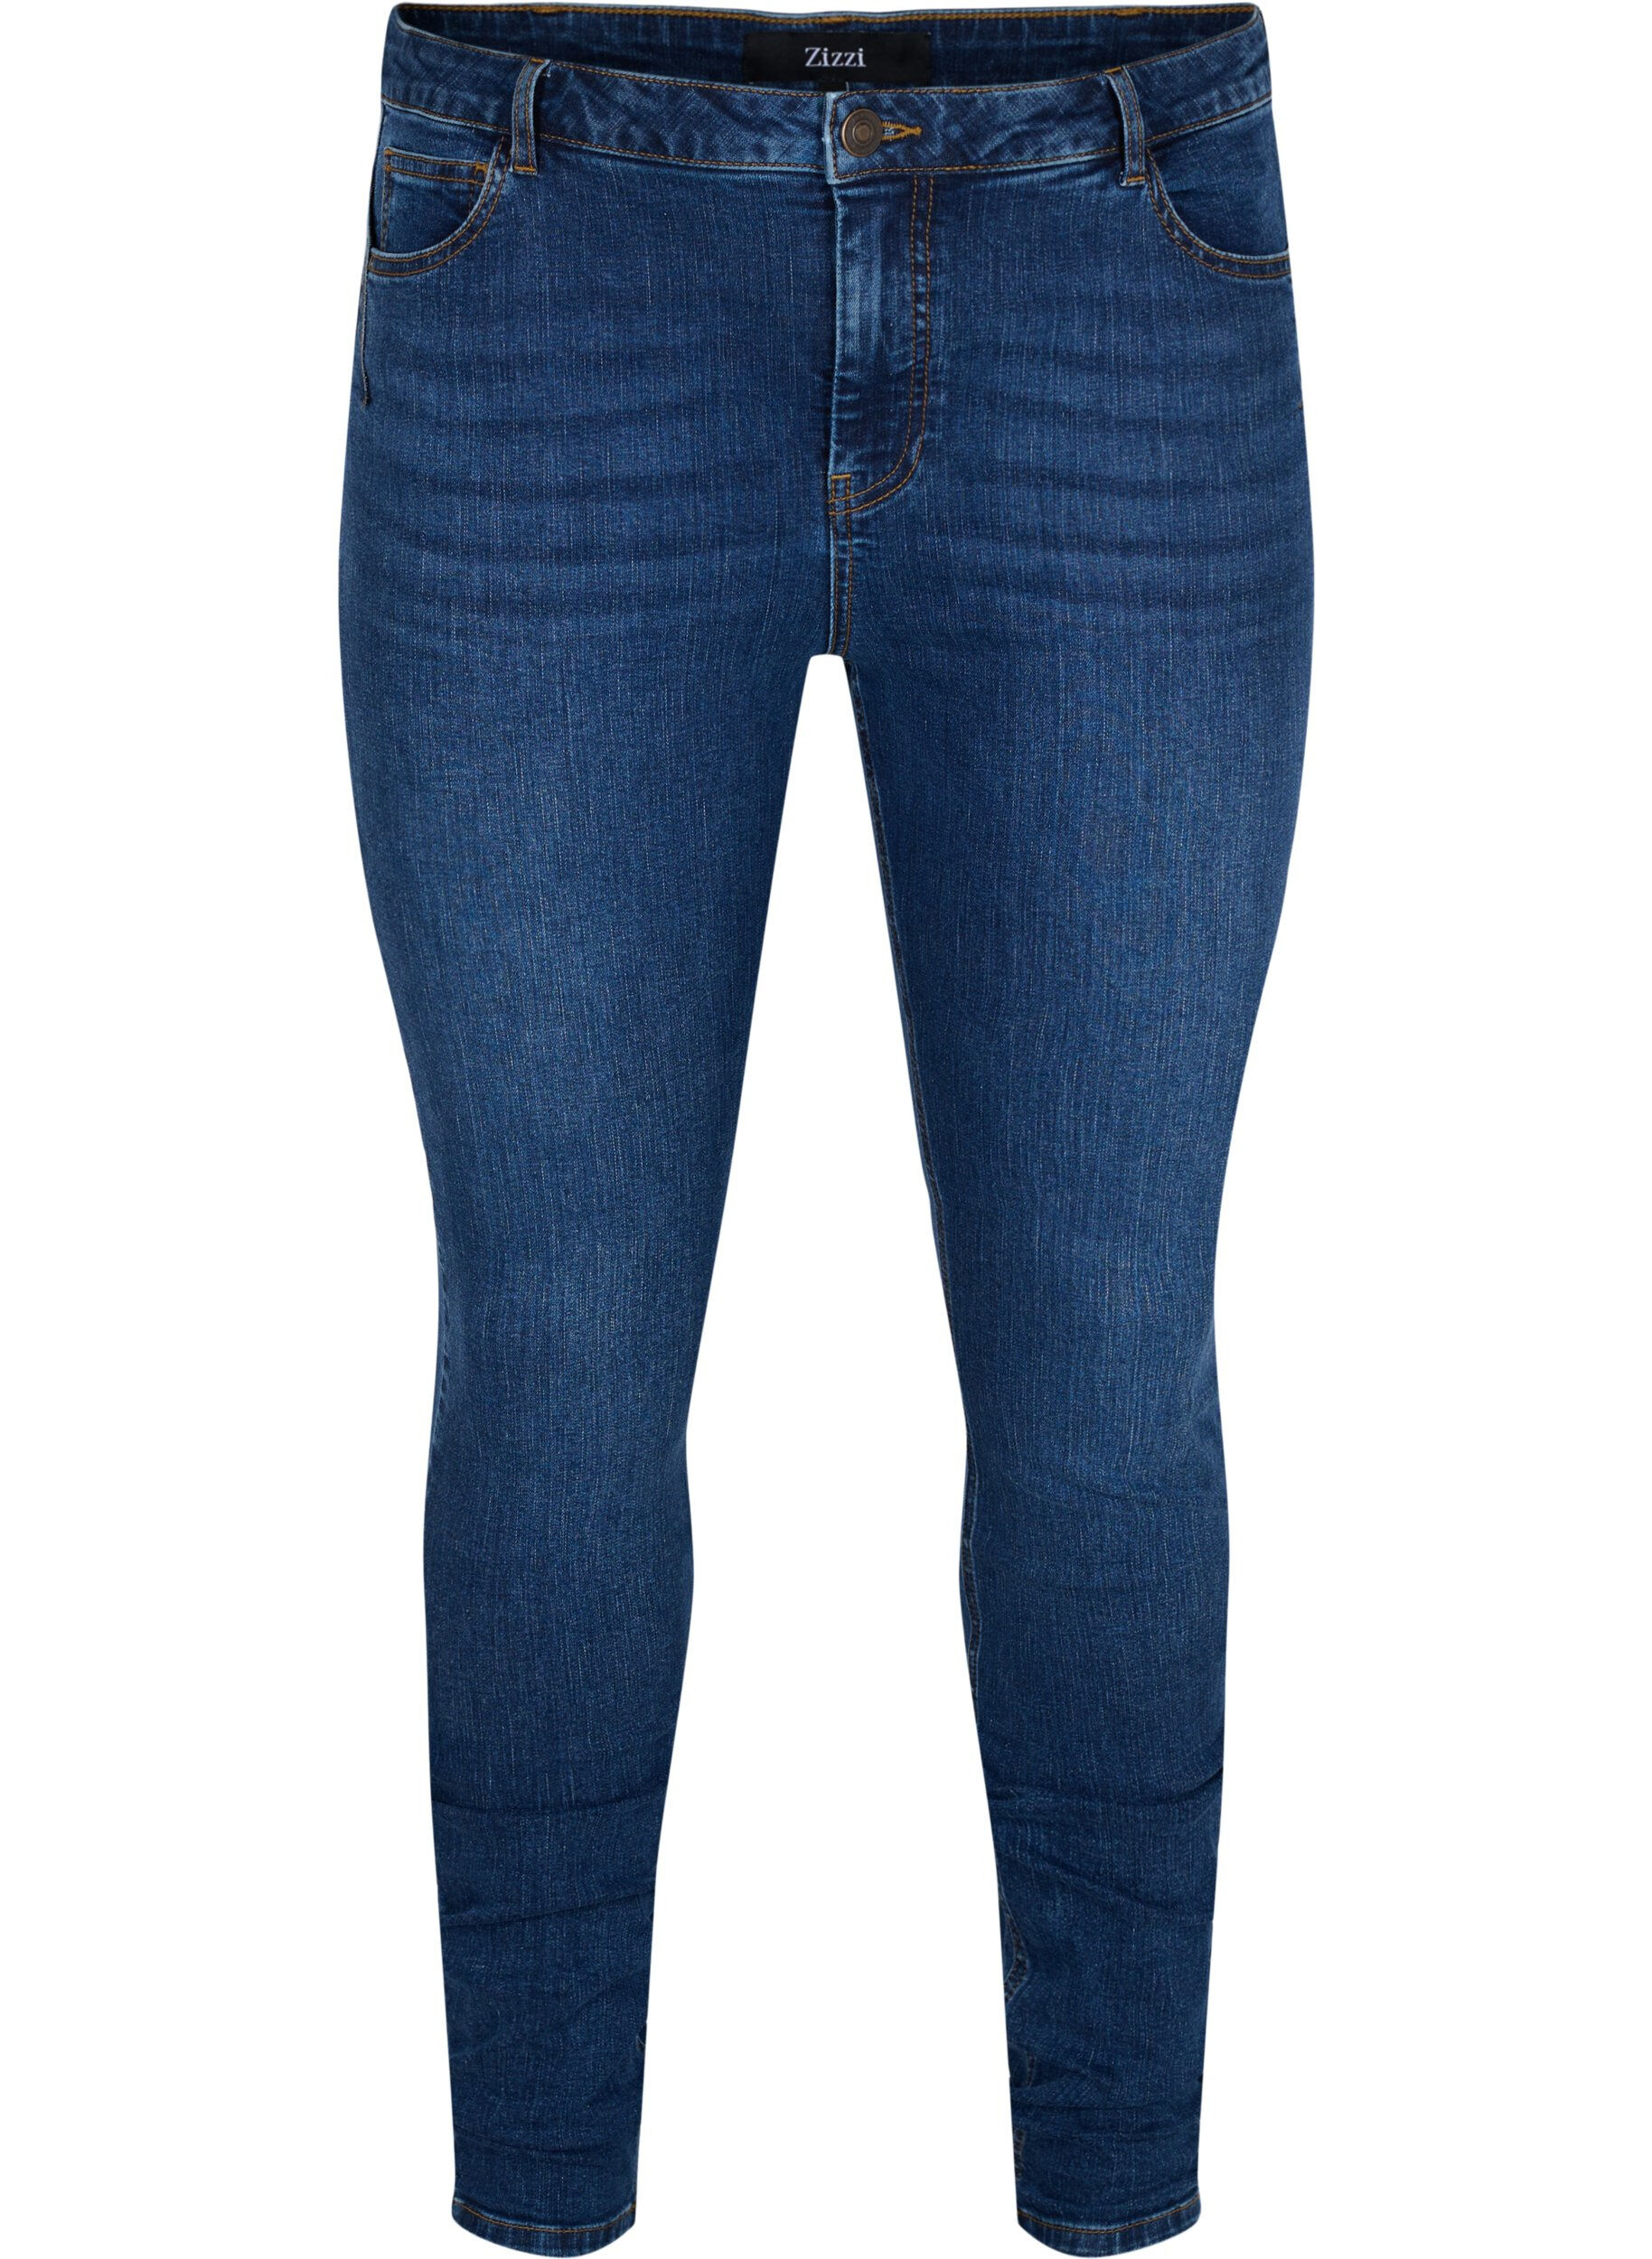 Mode Spijkerbroeken Skinny jeans Esprit Skinny jeans blauw casual uitstraling 